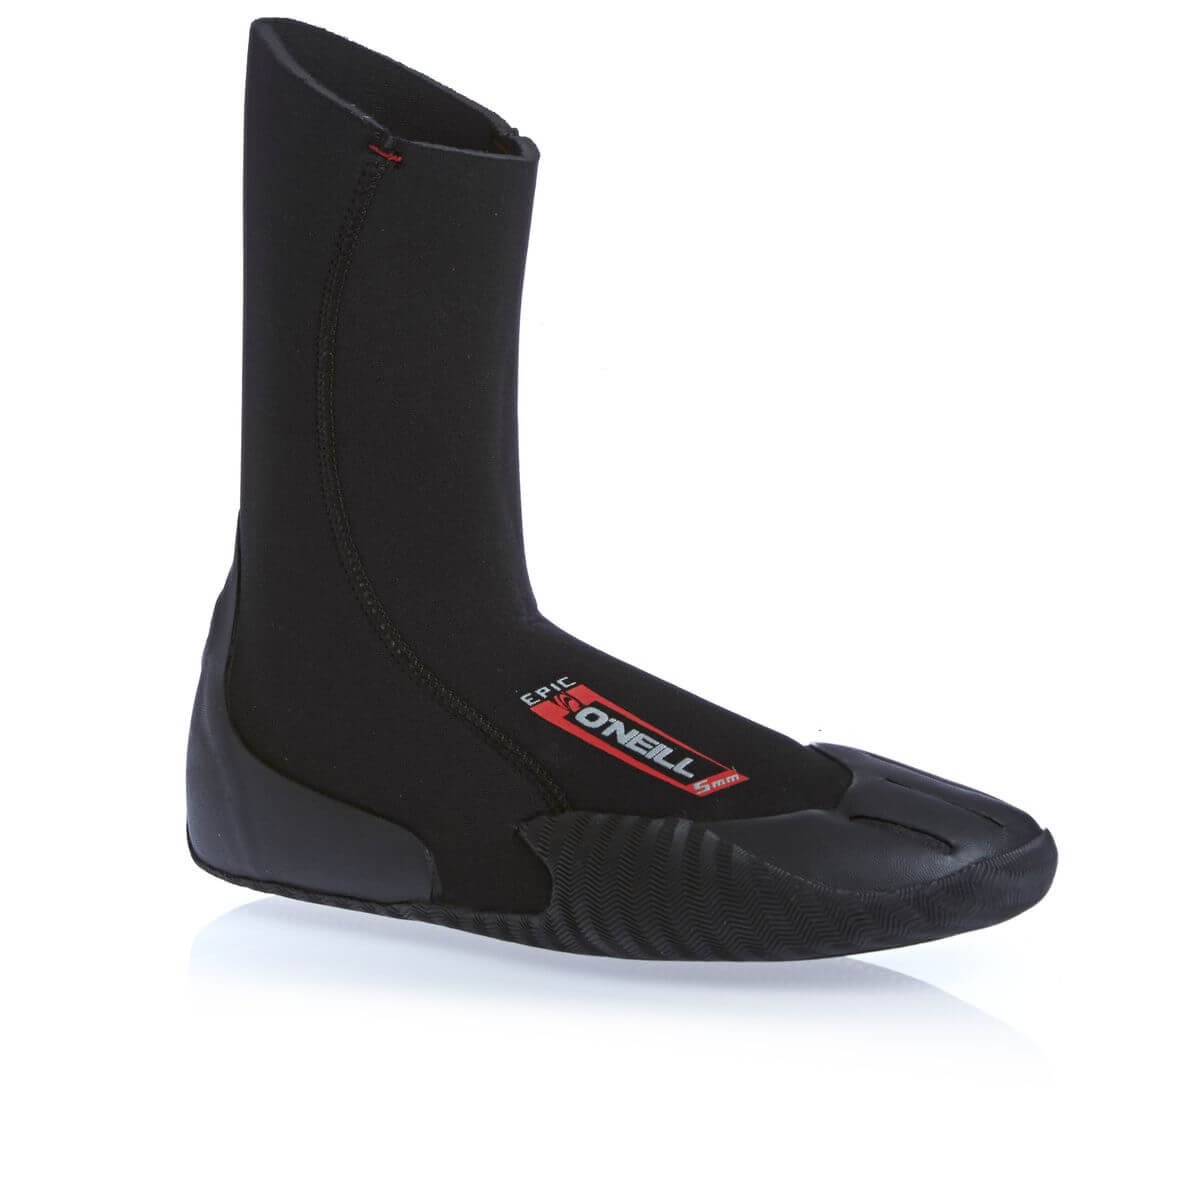 O'Neill Reactor 2mm Reef Wetsuit Boot Boots Boot Black Lightweight Unisex Men 